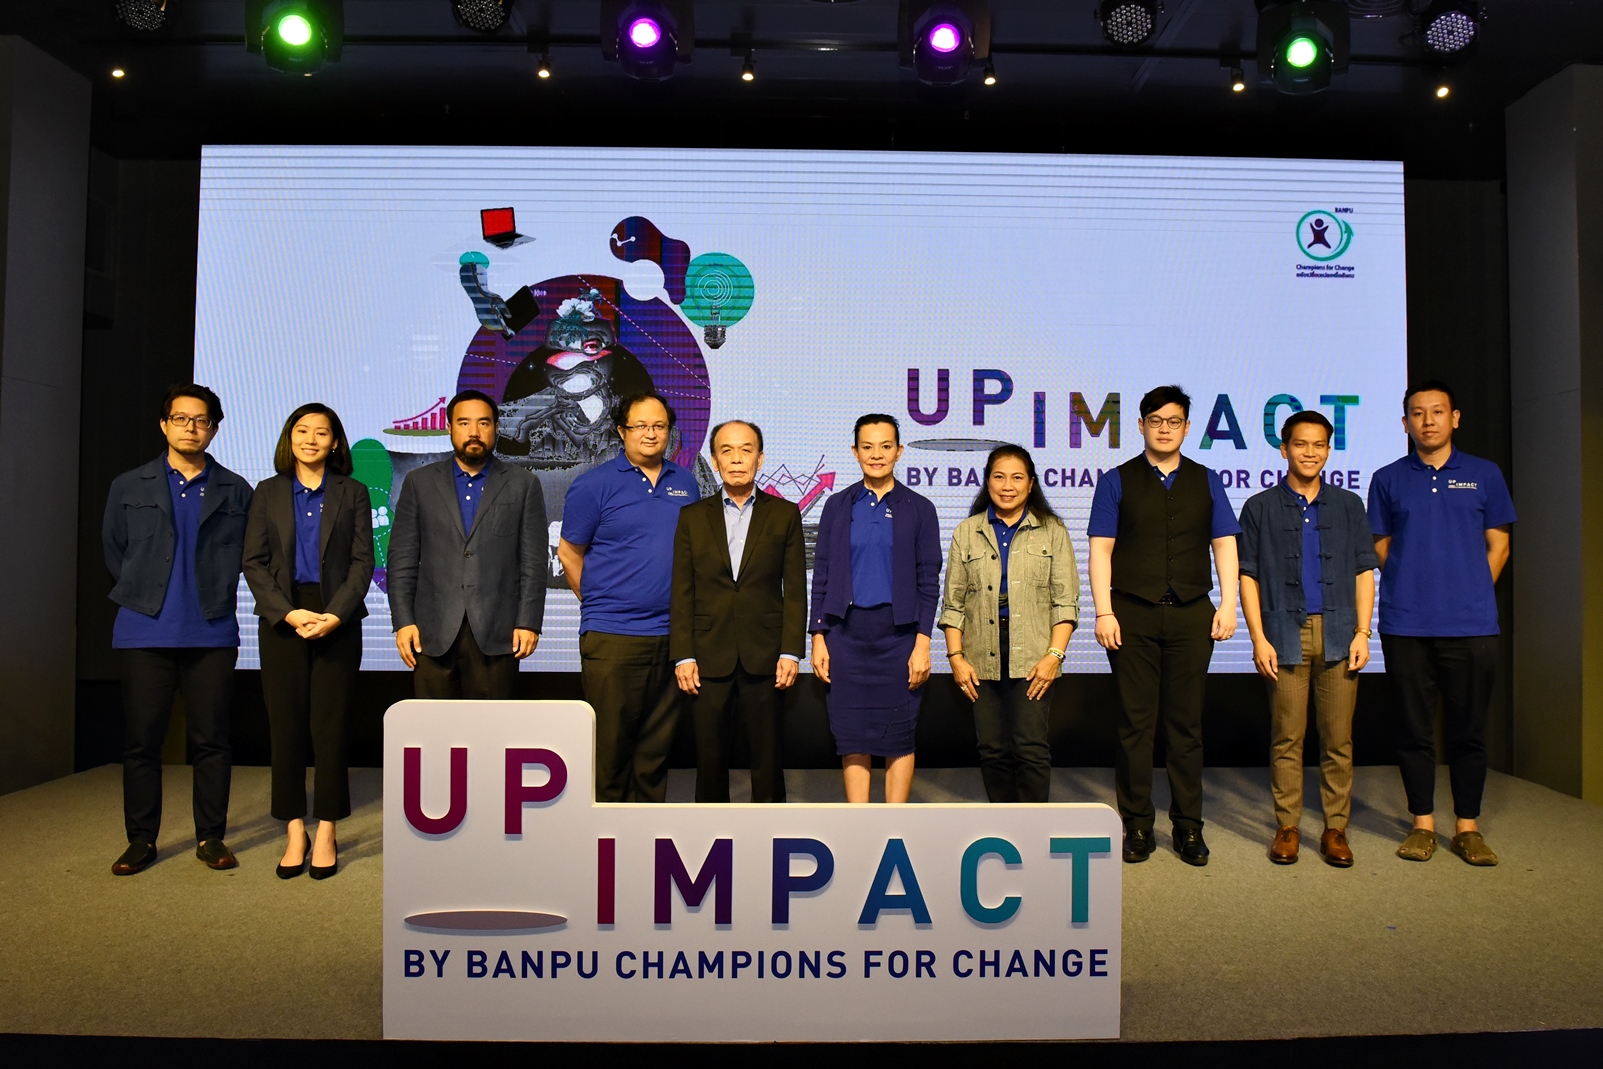 บ้านปูฯ เดินหน้าช่วยผู้ประกอบการสู้วิกฤติเศรษฐกิจ จัดกิจกรรม UpImpact by Banpu Champions for Change - ขับเคลื่อนธุรกิจเพื่อสังคม